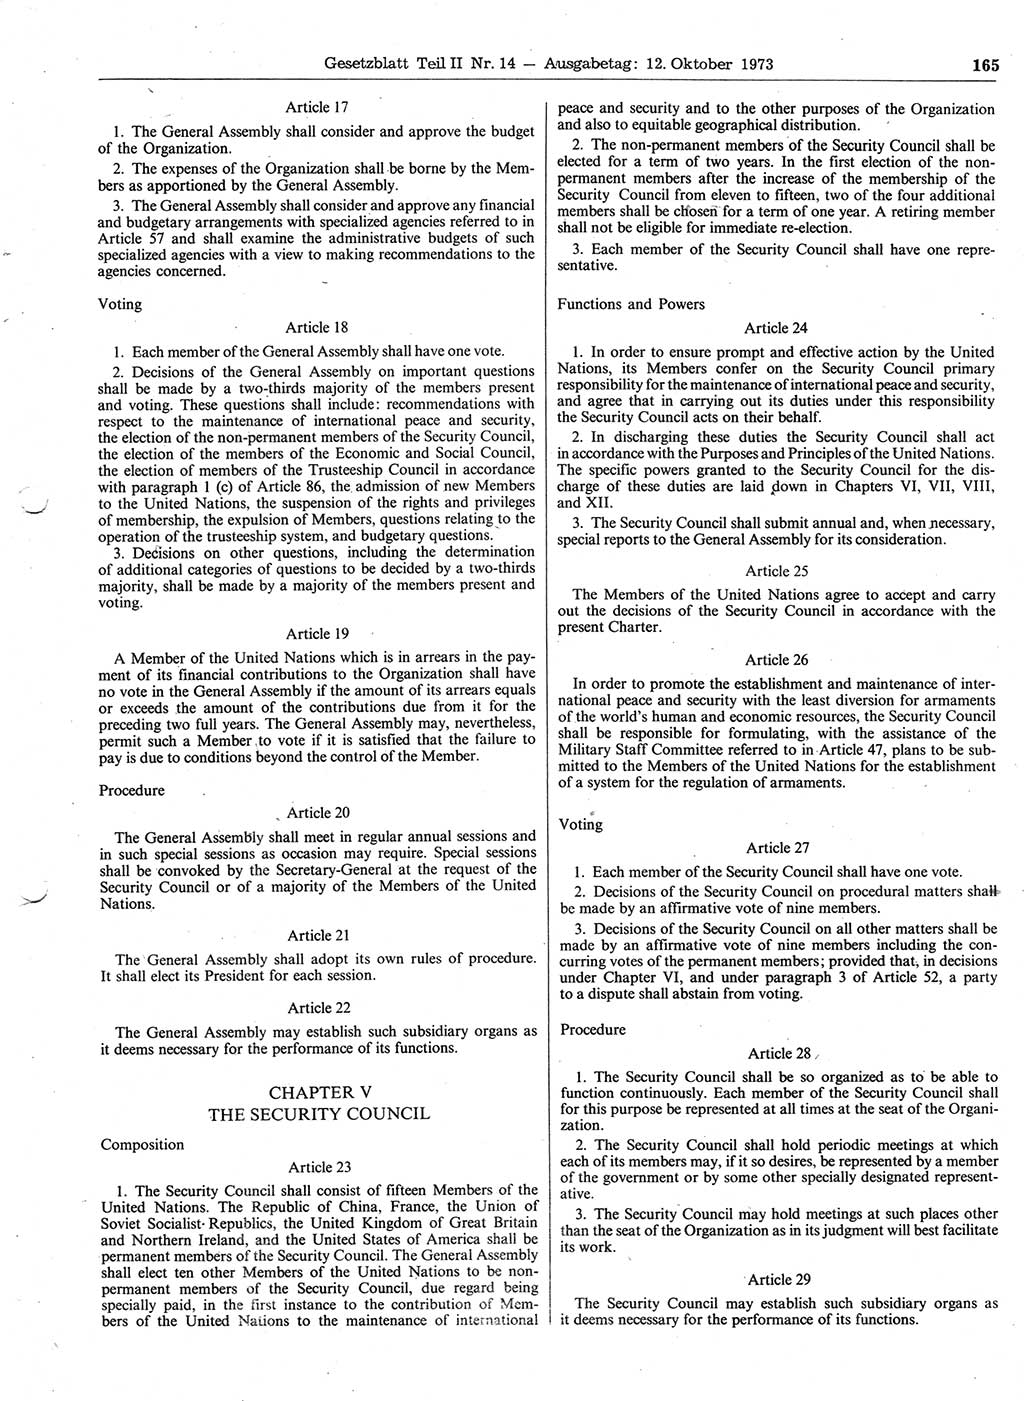 Gesetzblatt (GBl.) der Deutschen Demokratischen Republik (DDR) Teil ⅠⅠ 1973, Seite 165 (GBl. DDR ⅠⅠ 1973, S. 165)